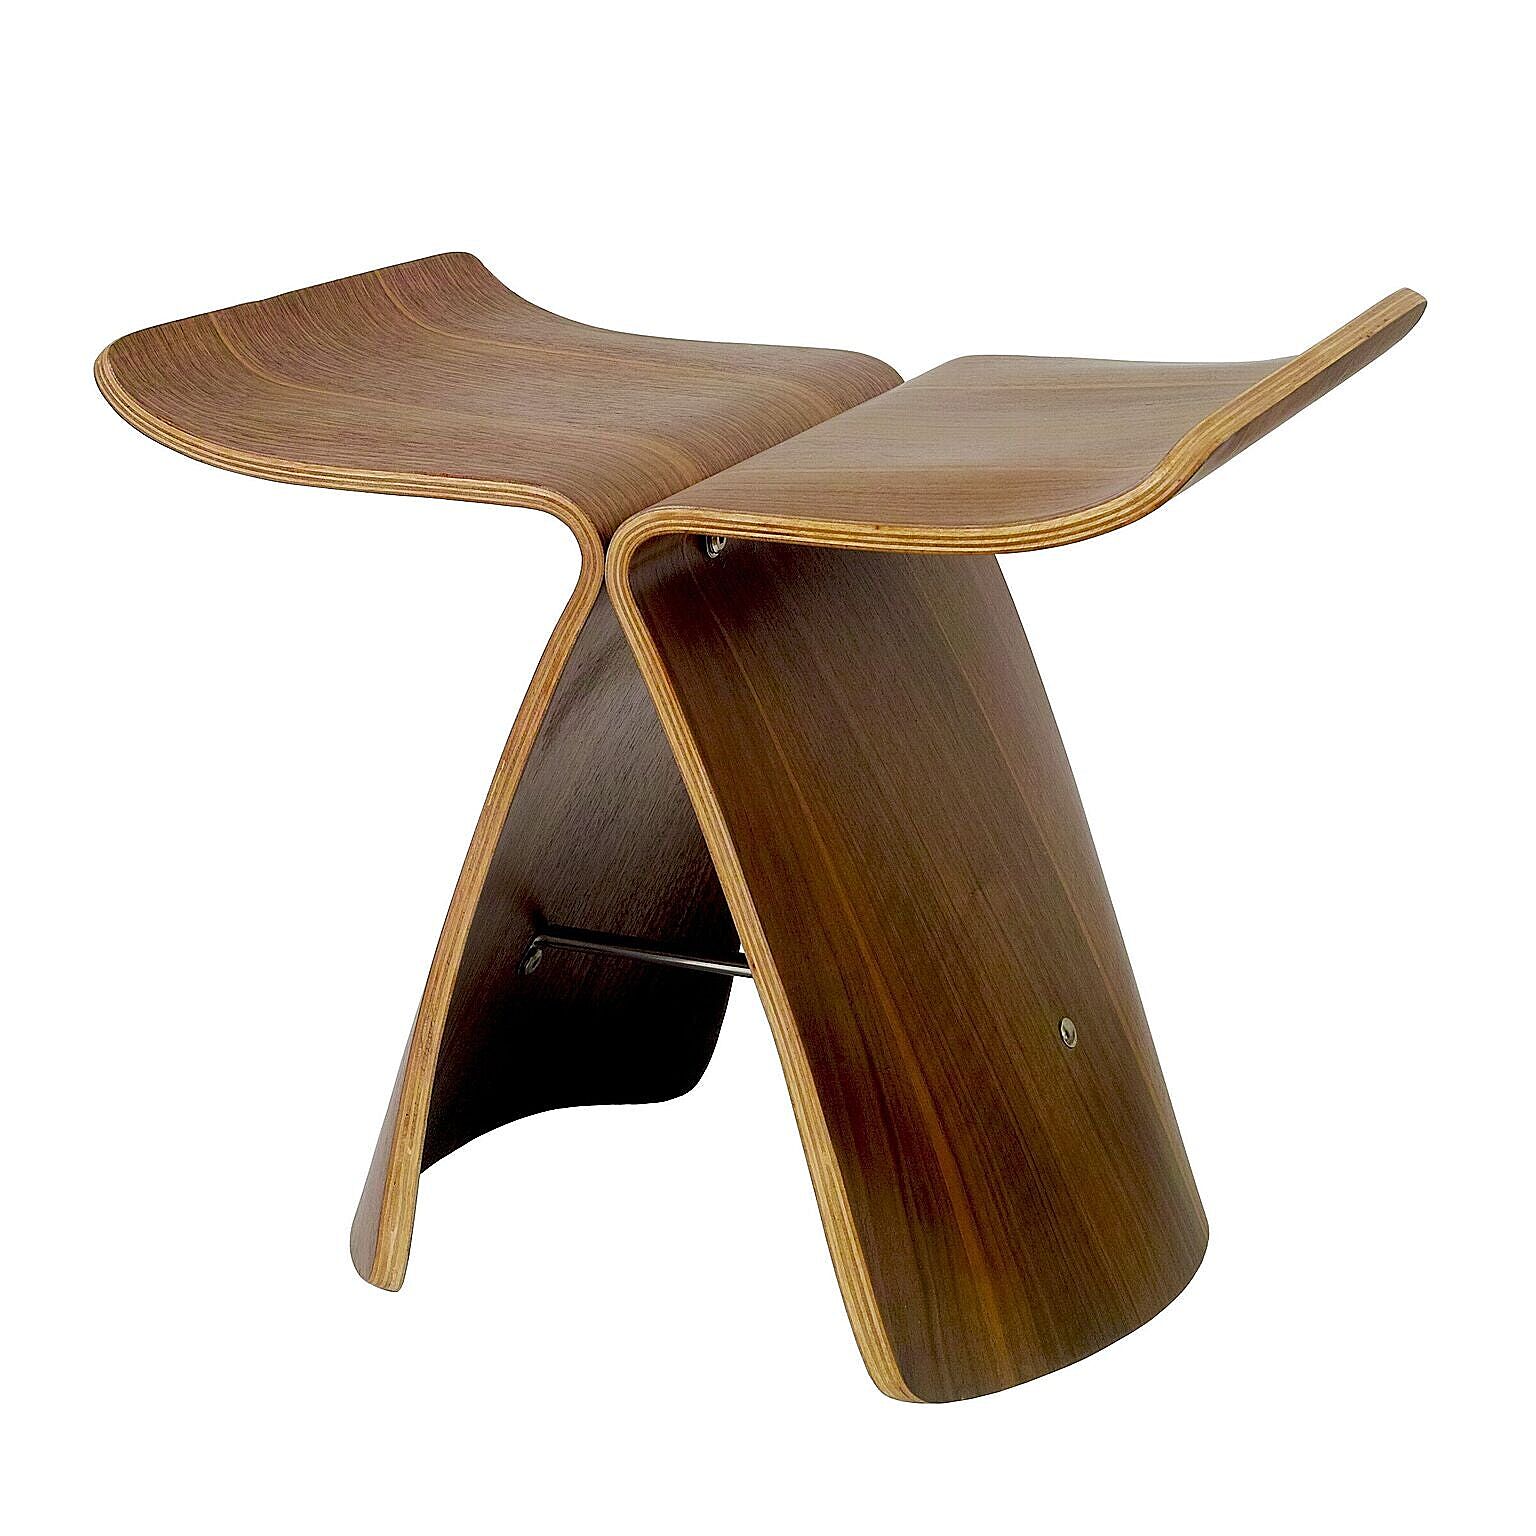 ウイングスツール 成形合板 木製スツール ローズウッド ウォールナット メープル | デザイナーズ リプロダクト デザイナー ブラウン クッション 椅子 オットマン